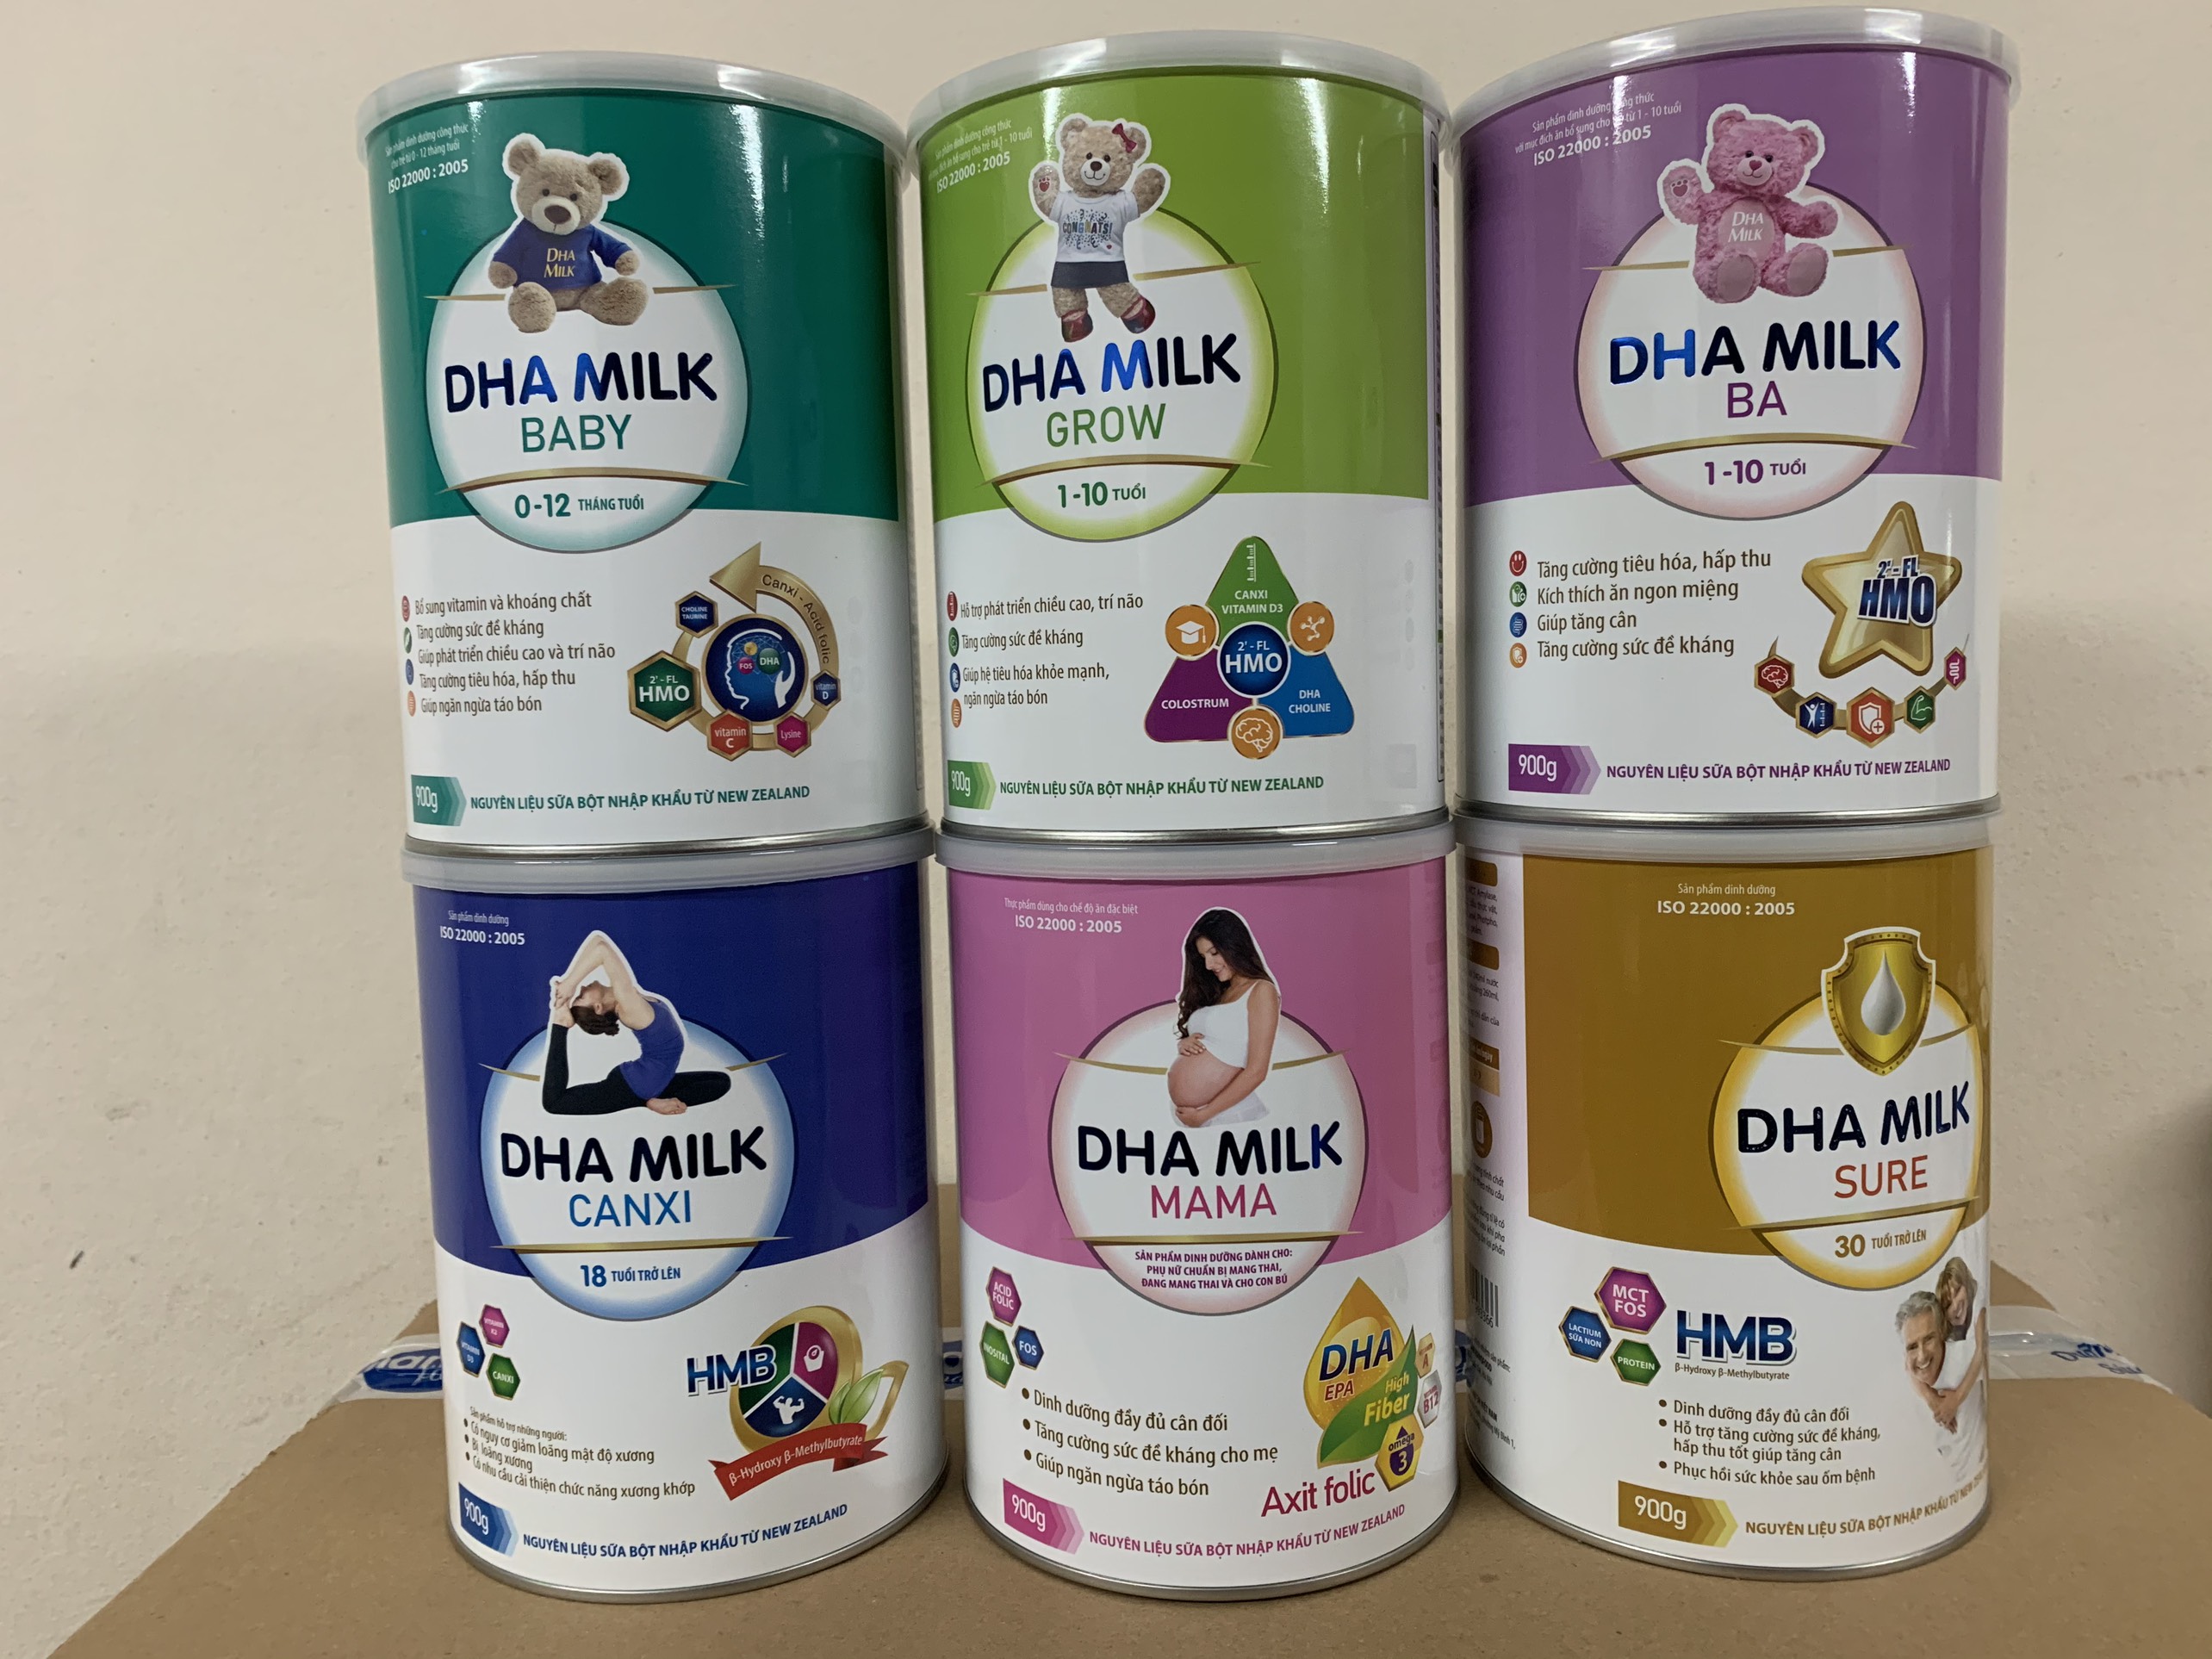 Sữa DHA MILK - Dinh Dưỡng Hoàn Hảo - Chăm Sóc Sức Khỏe, Trí Tuệ Người Việt